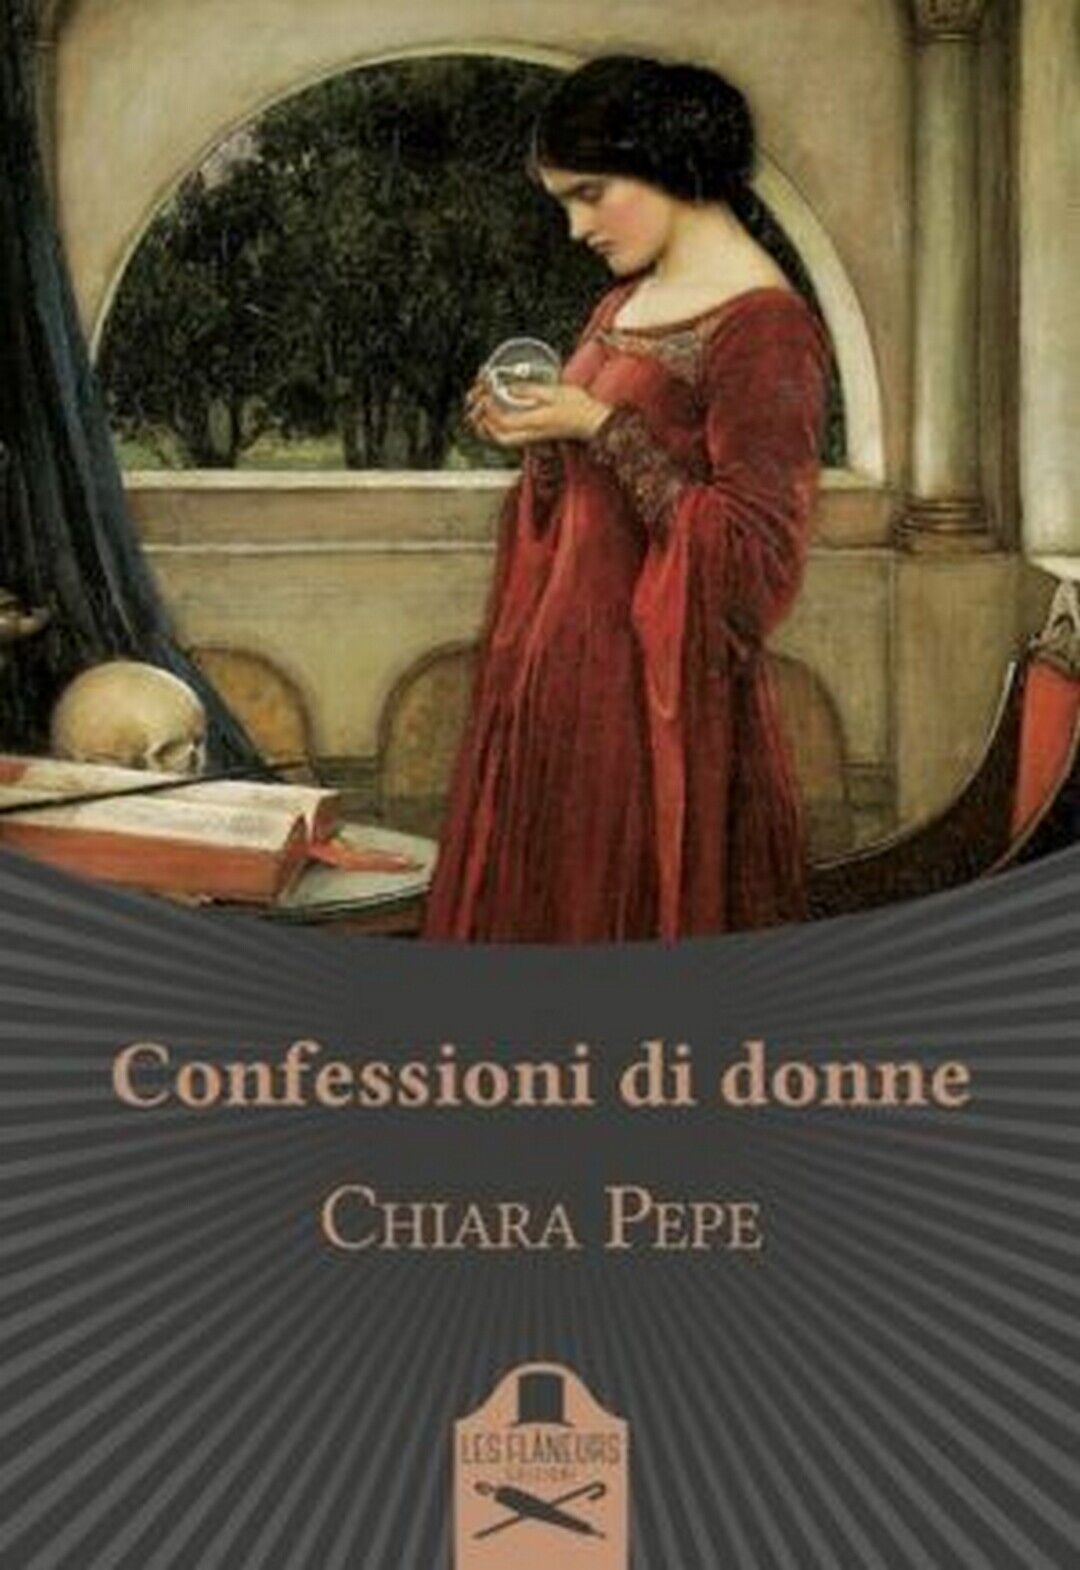 Confessioni di donne  di Chiara Pepe ,  Flaneurs libro usato